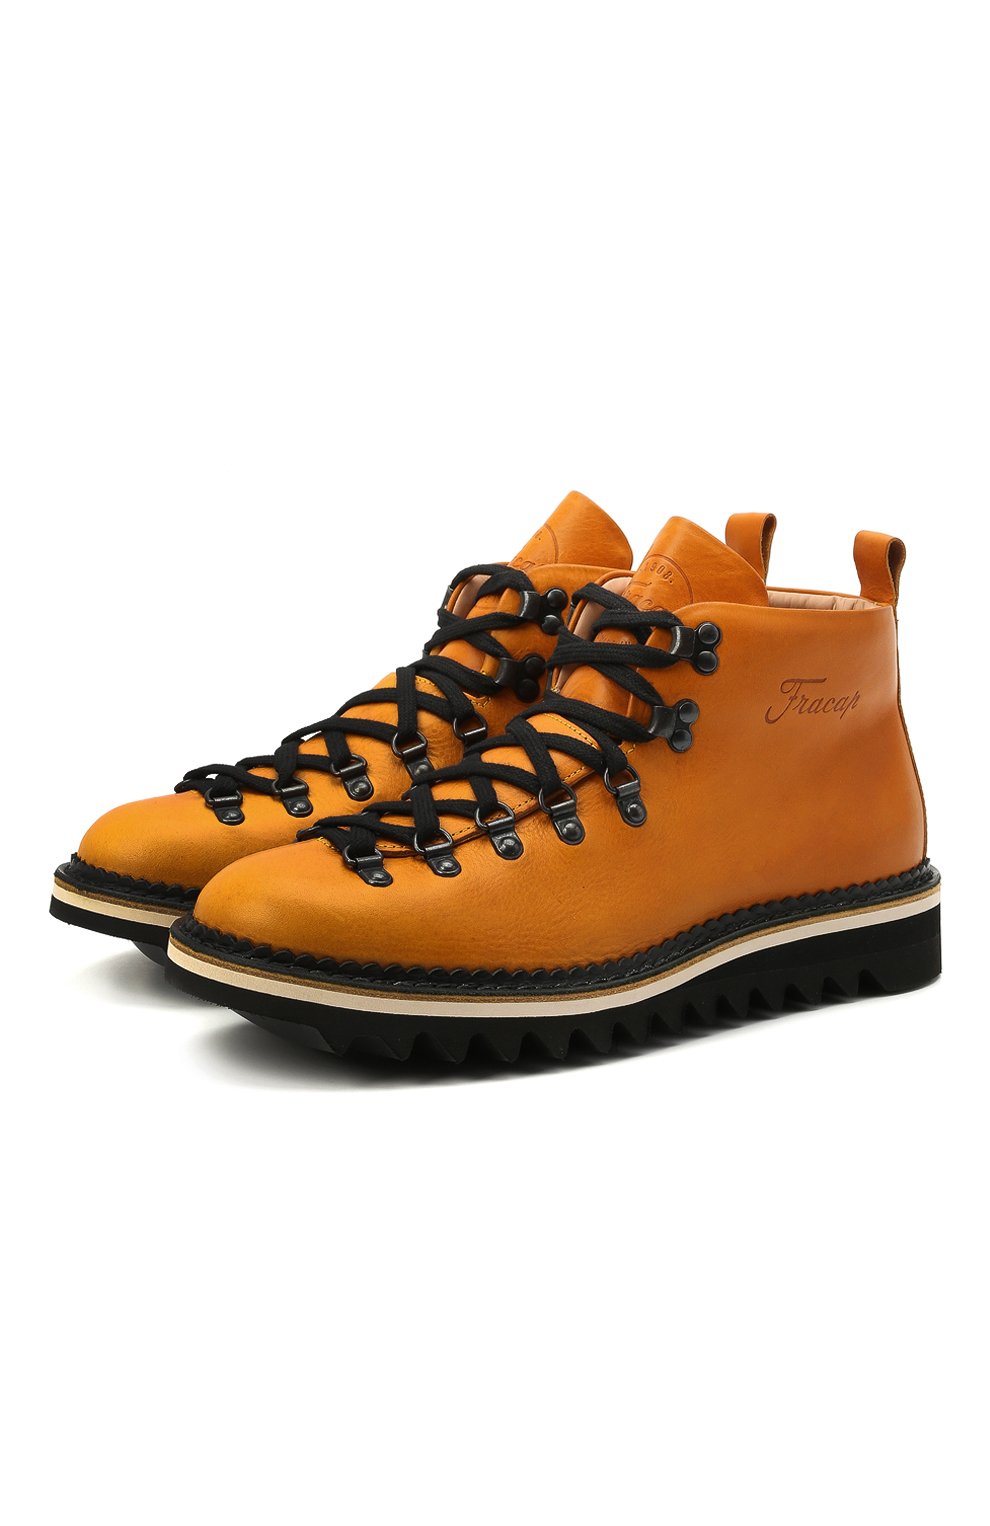 Мужские желтые кожаные ботинки m120 FRACAP купить в интернет-магазине ЦУМ,арт. M120/NEBR./CALFSKIN/RIPPLE/U